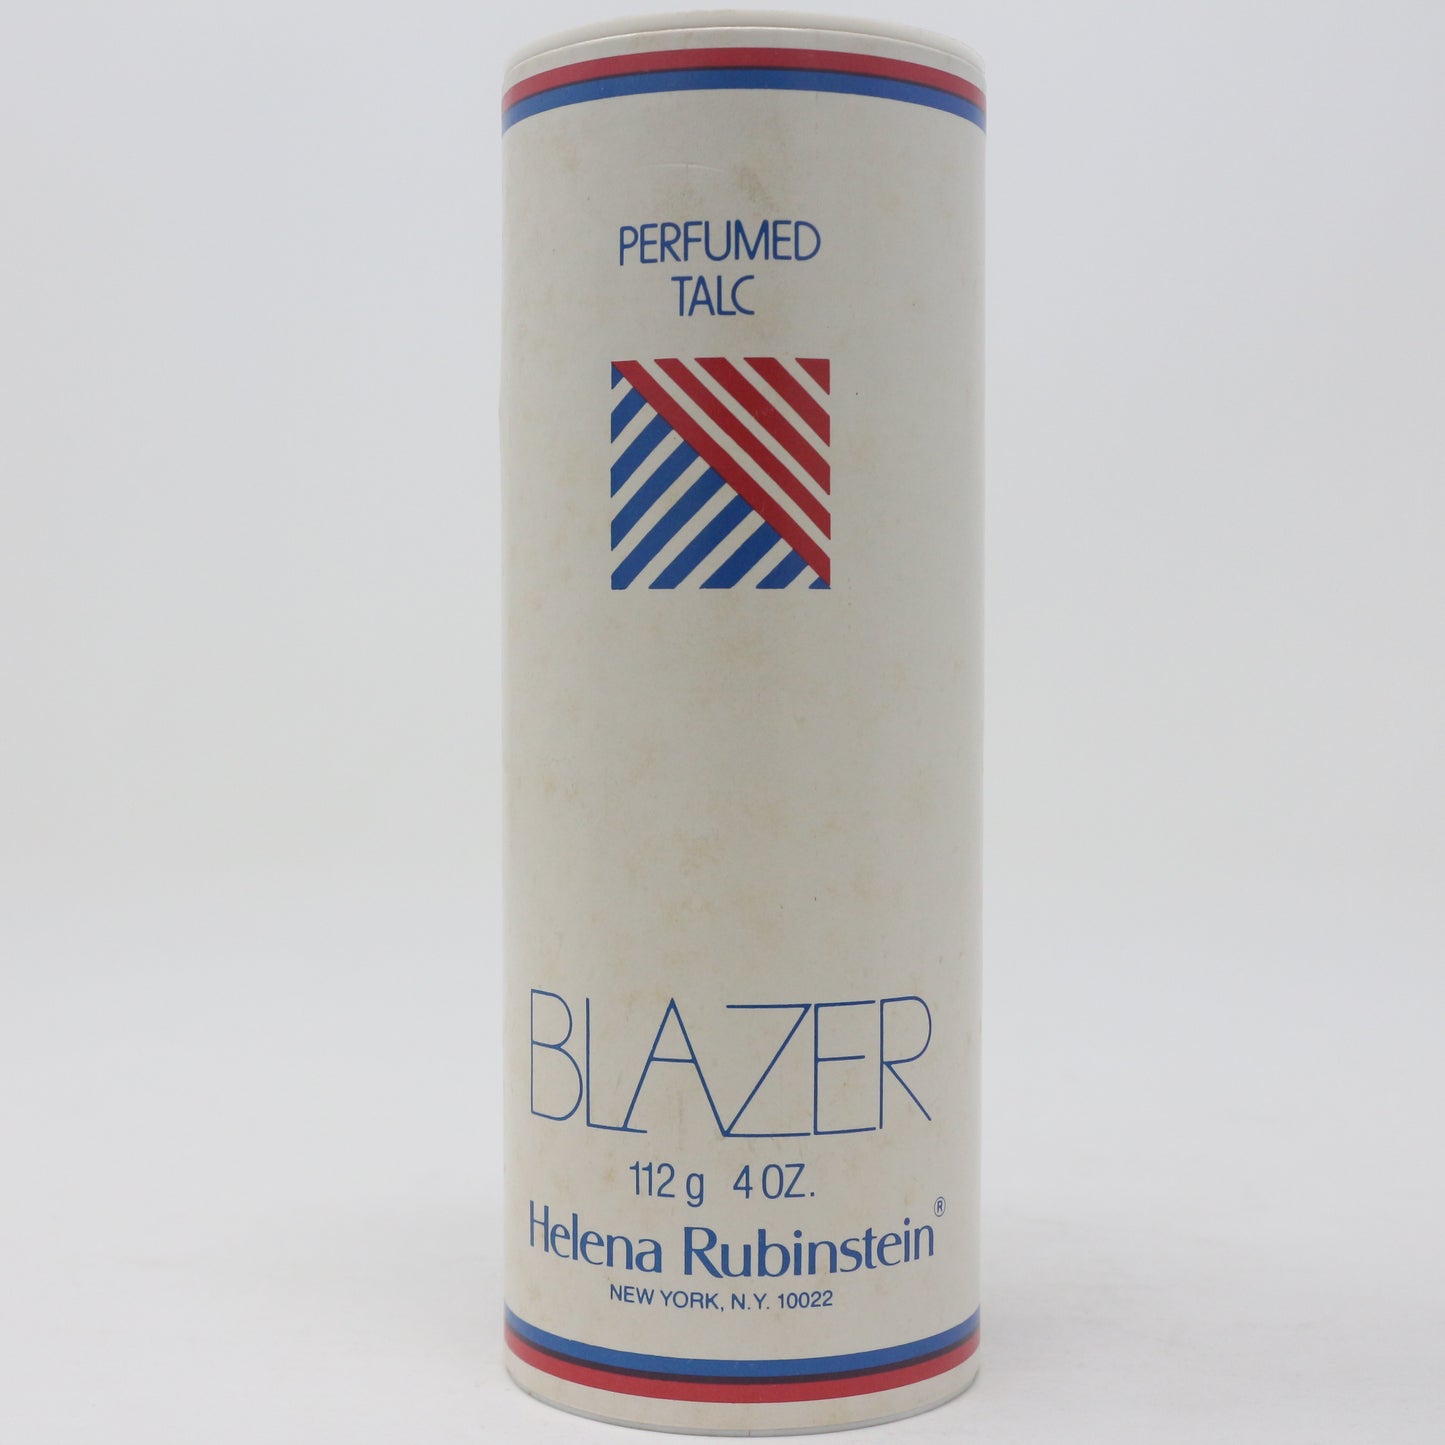 Blazer Perfumed Talc mL